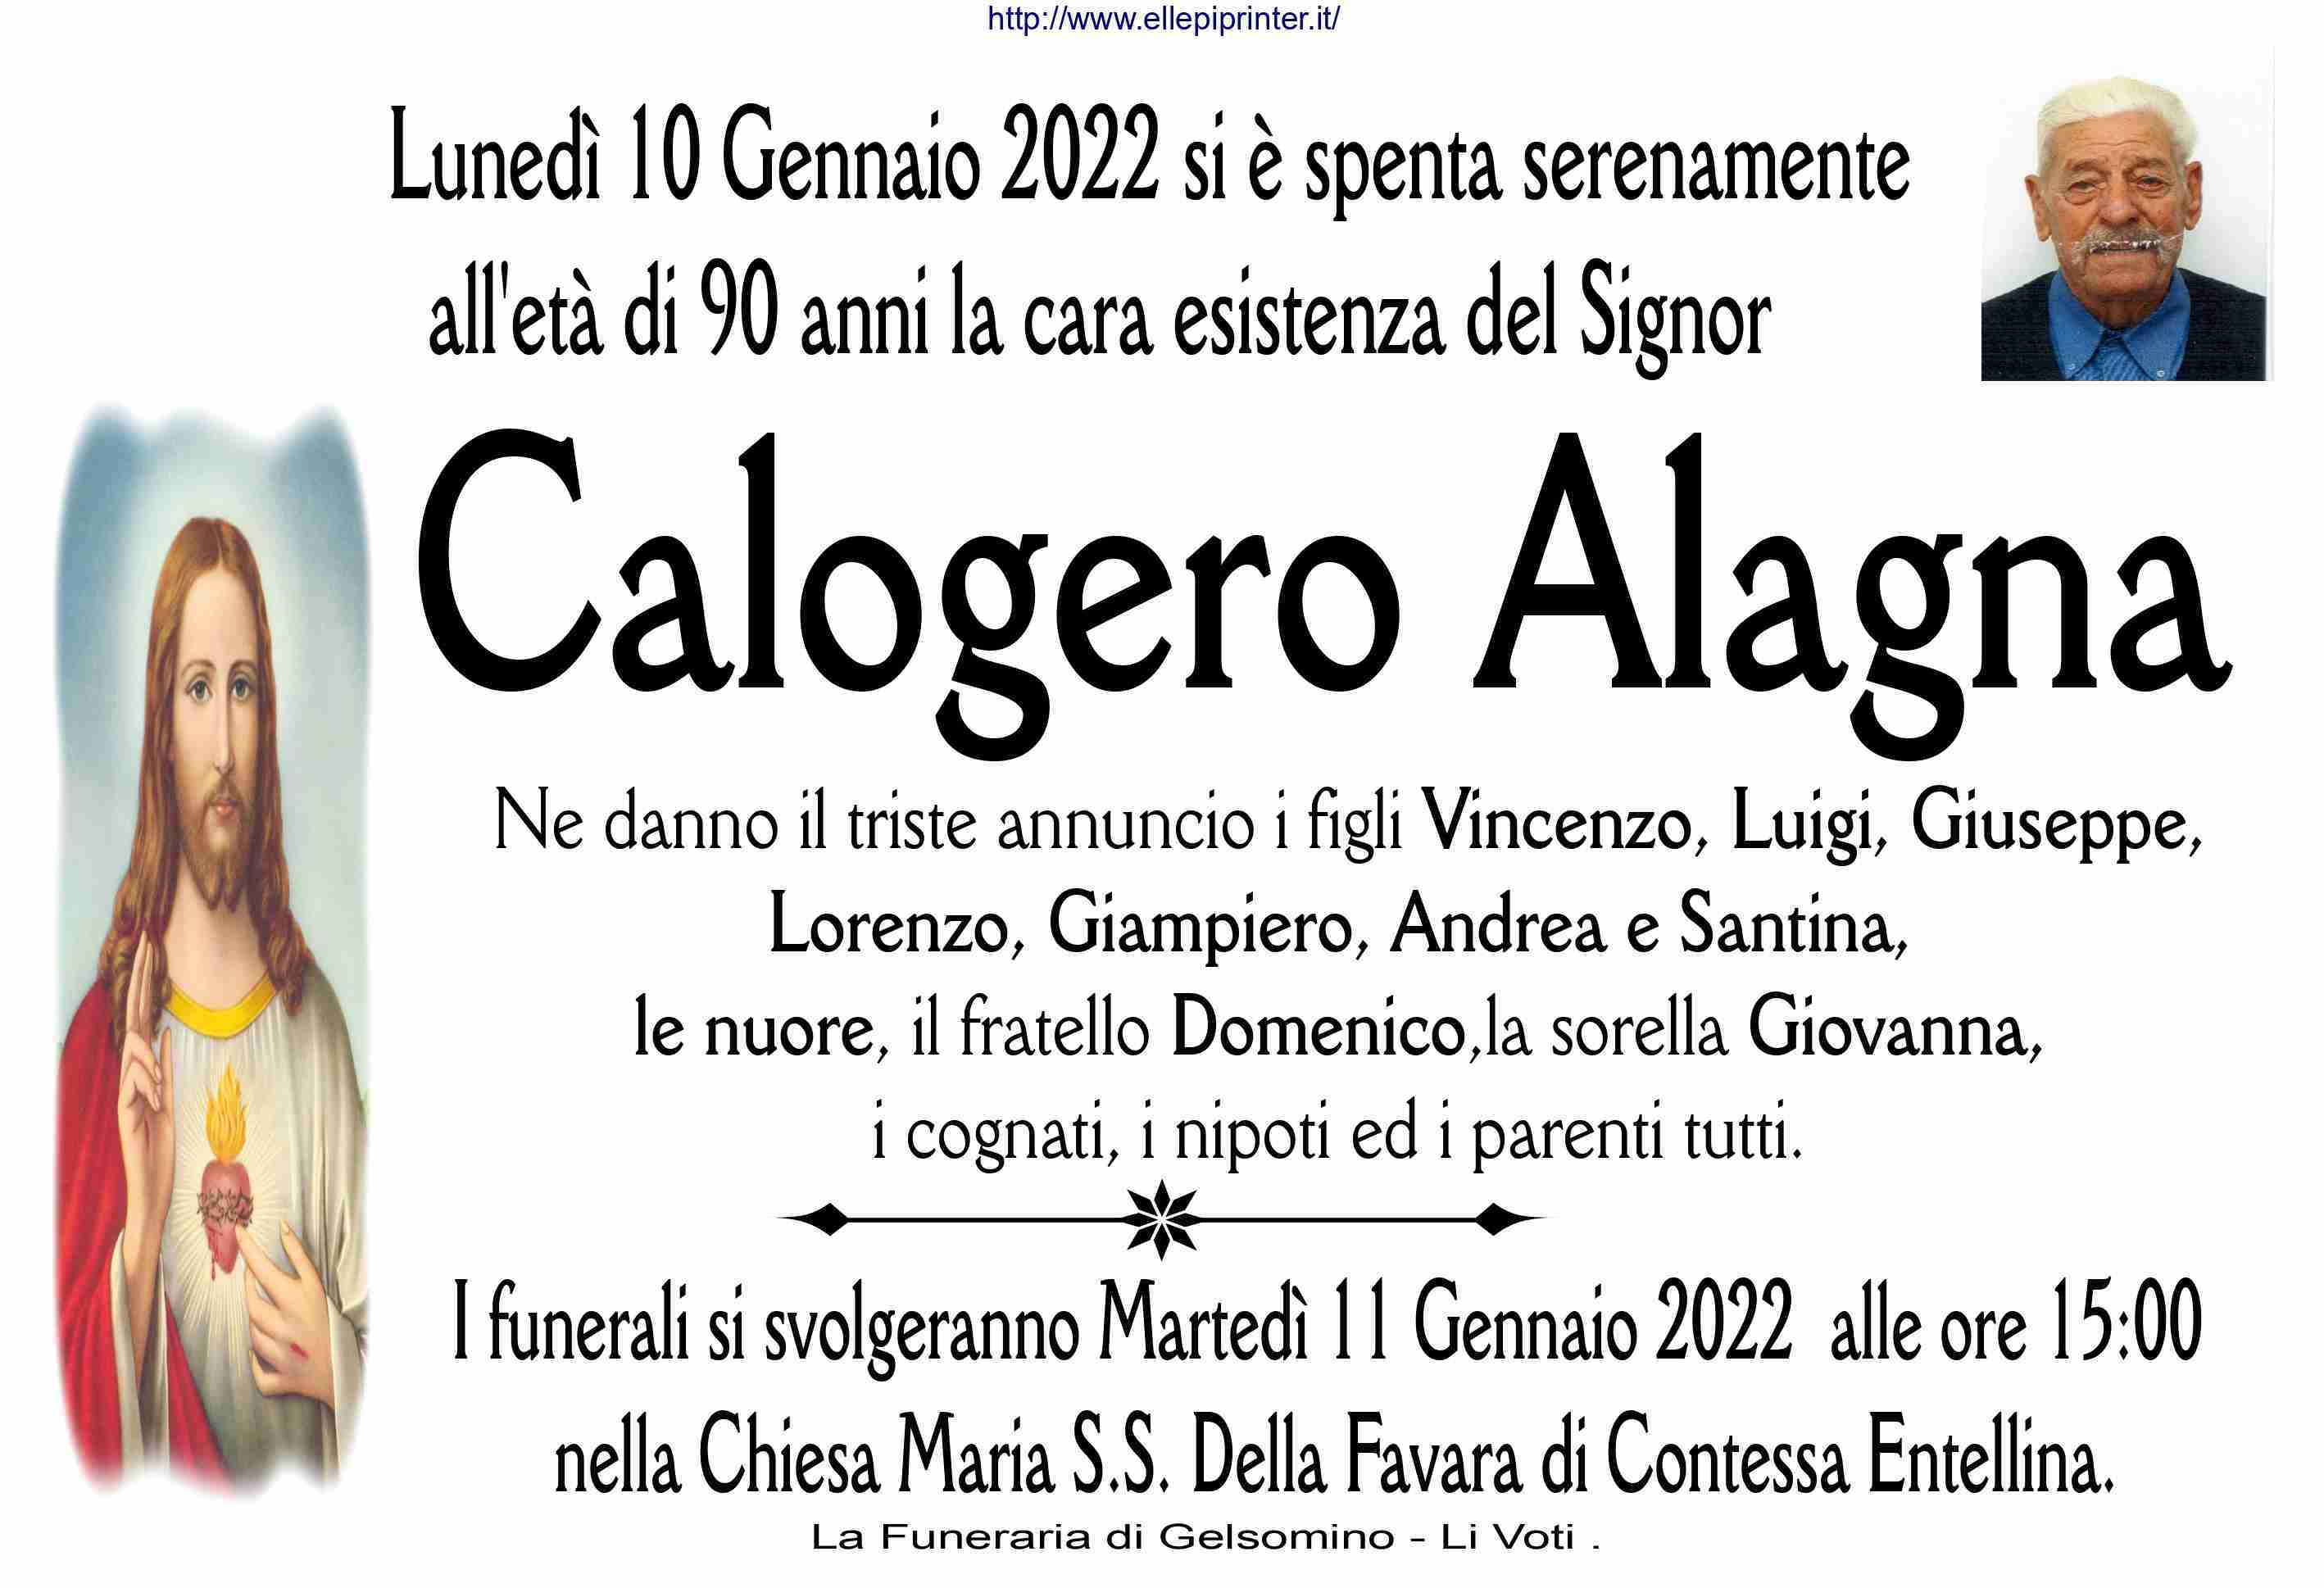 Calogero Alagna